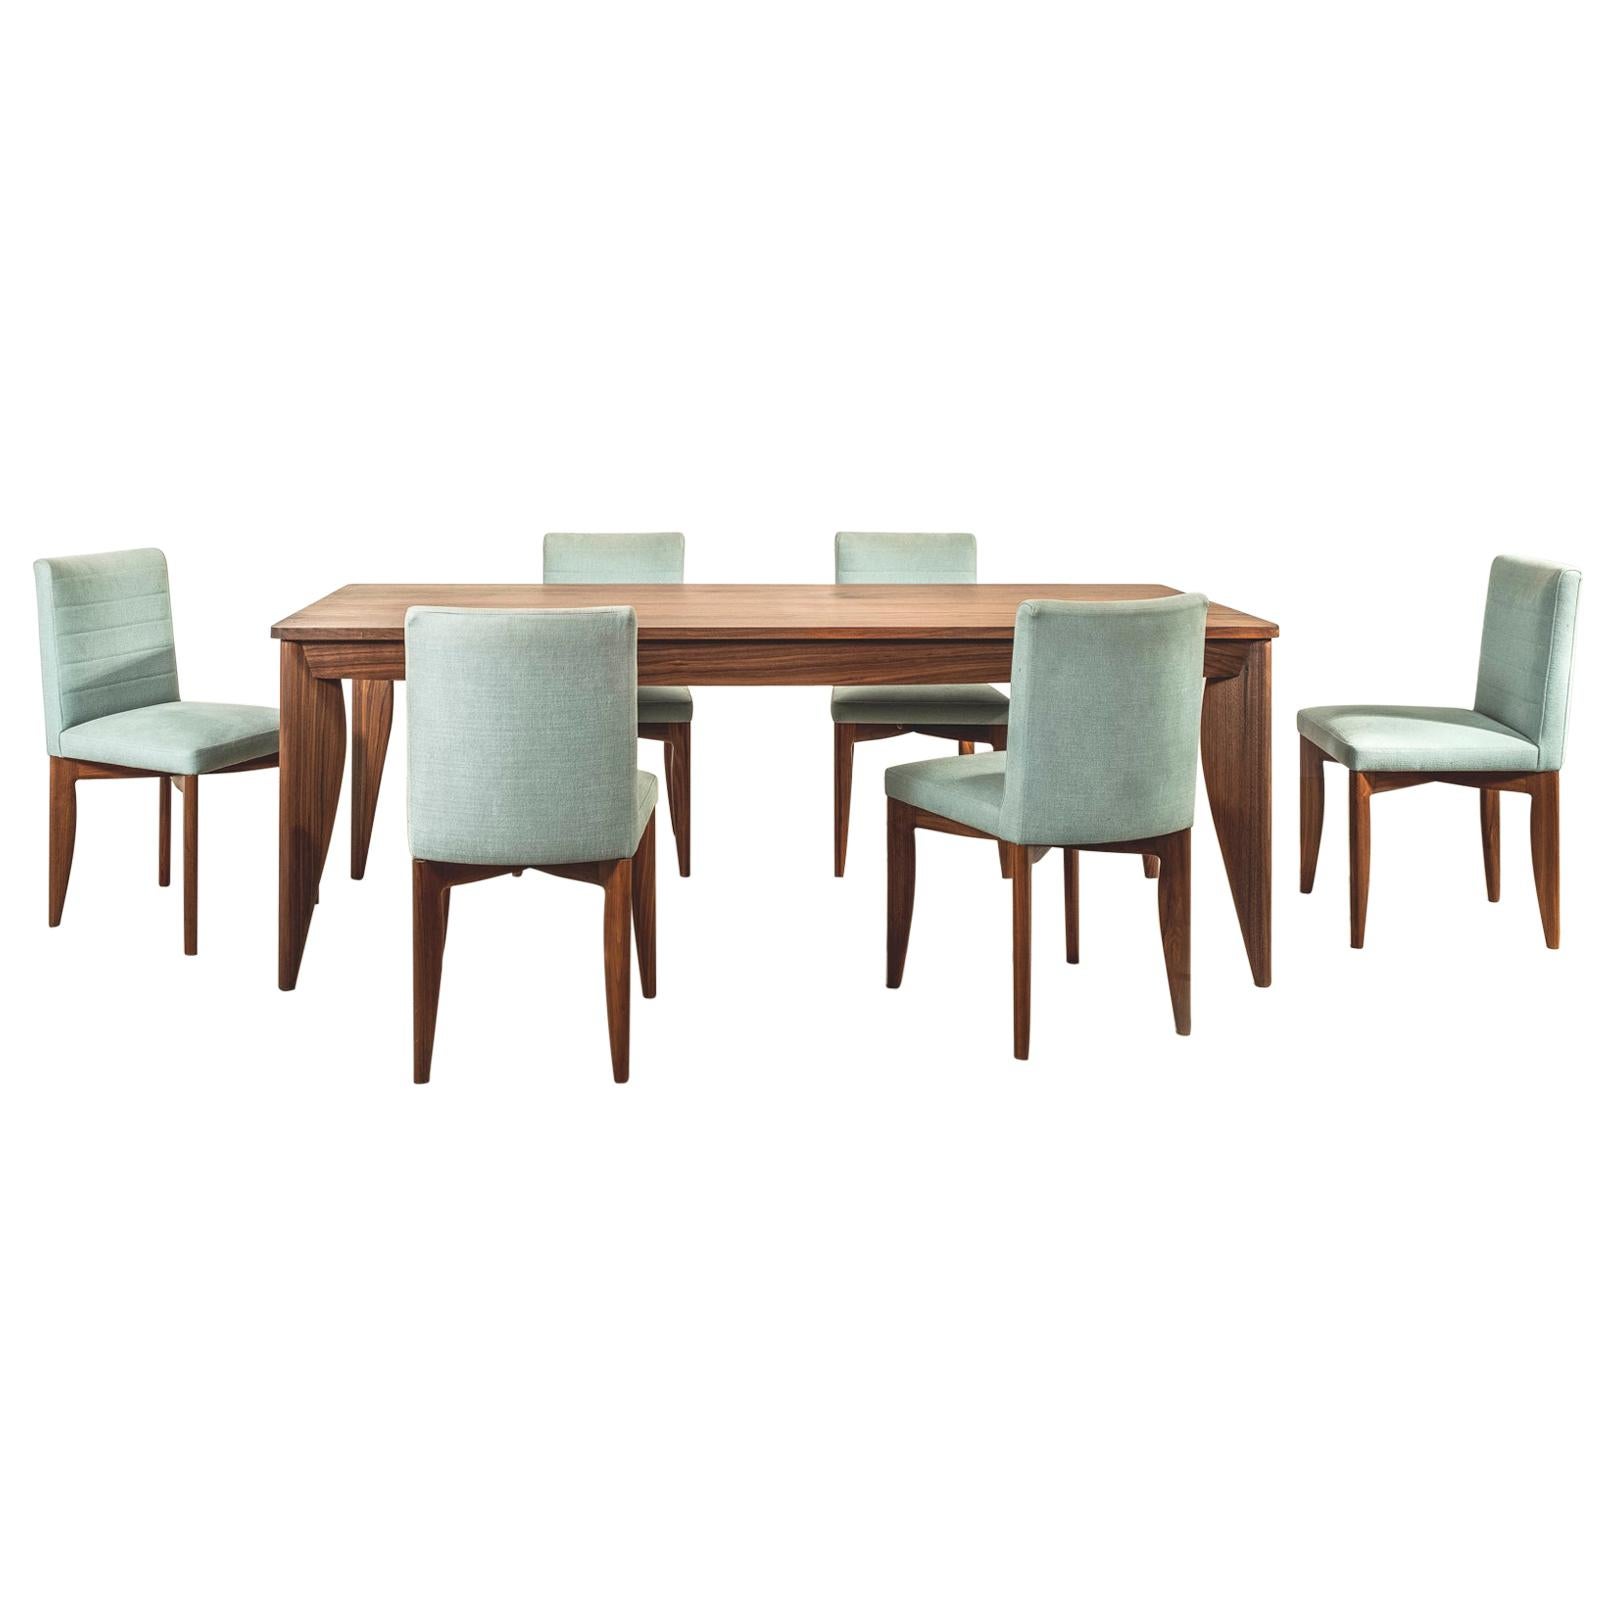 Esstisch mit Etui und sechs Stühlen aus amerikanischem Nussbaumholz, entworfen von Terence Conran